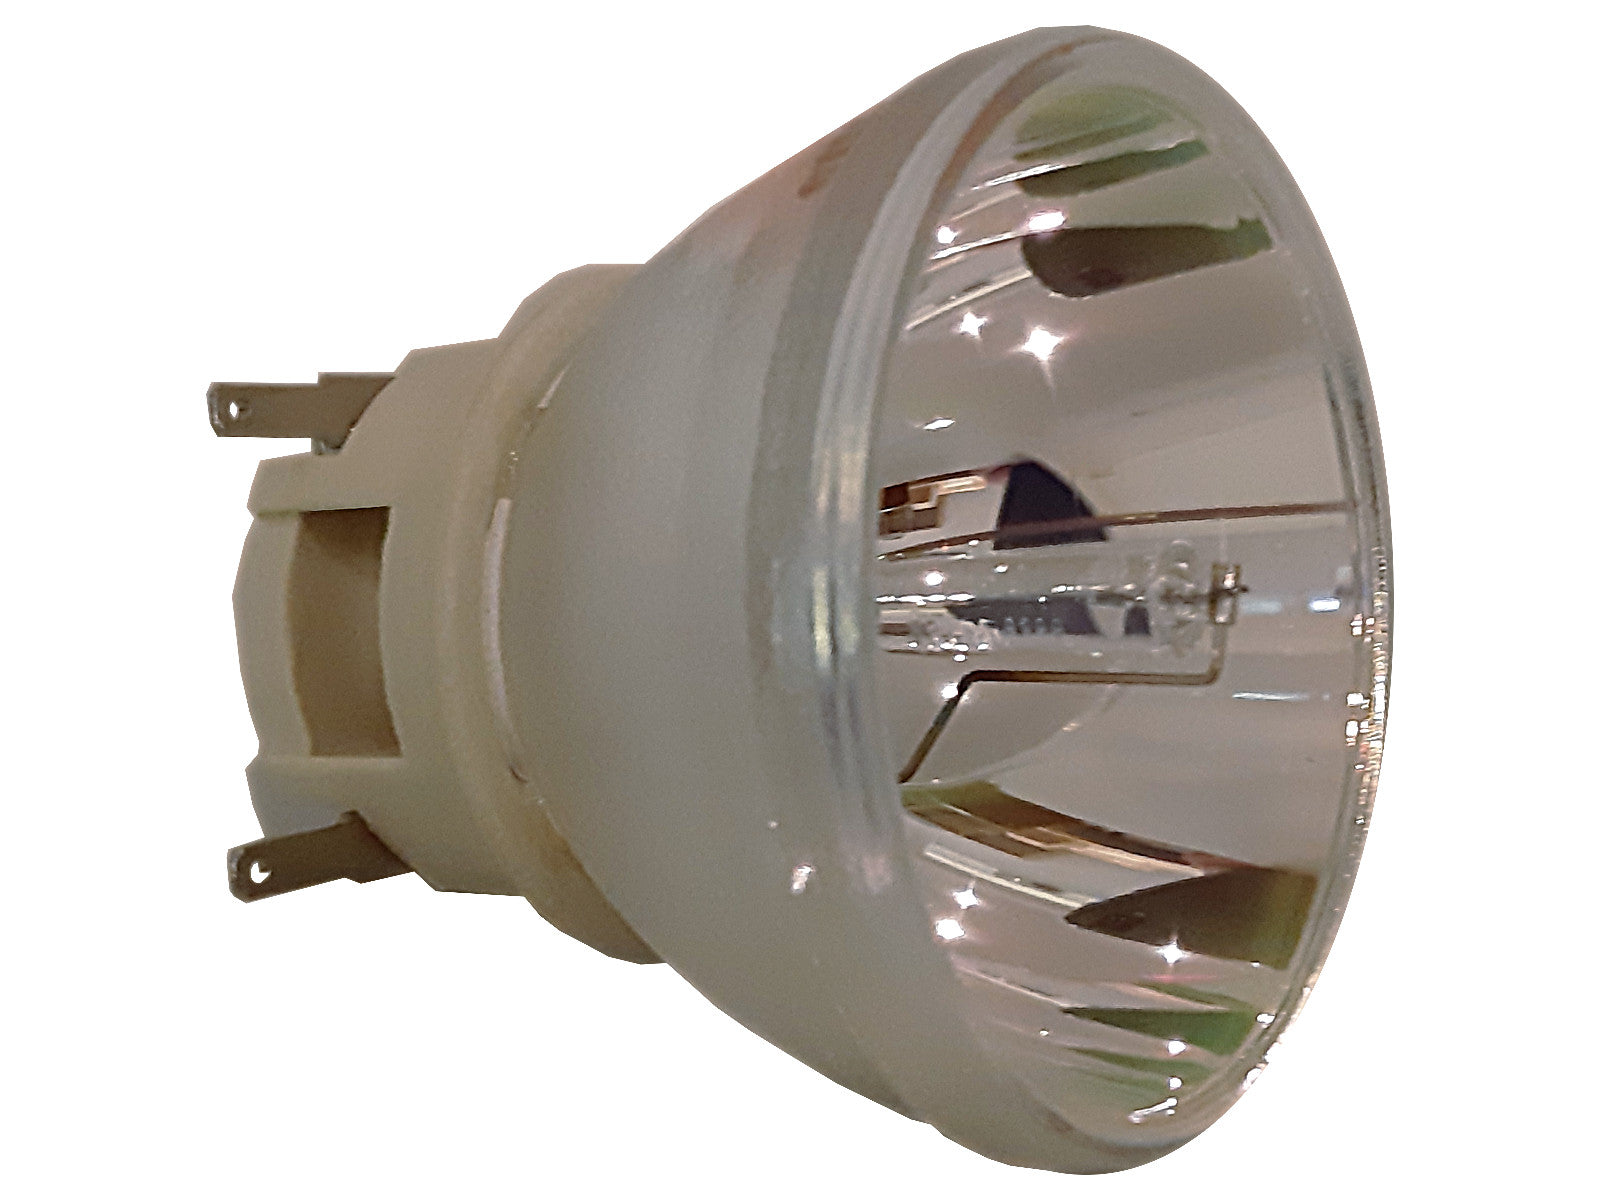 PHILIPS lampe vidéoprojecteur UHP 240-170W 0.8 E20.7 Fusion Air (TOP 461 / 491) - Bild 1